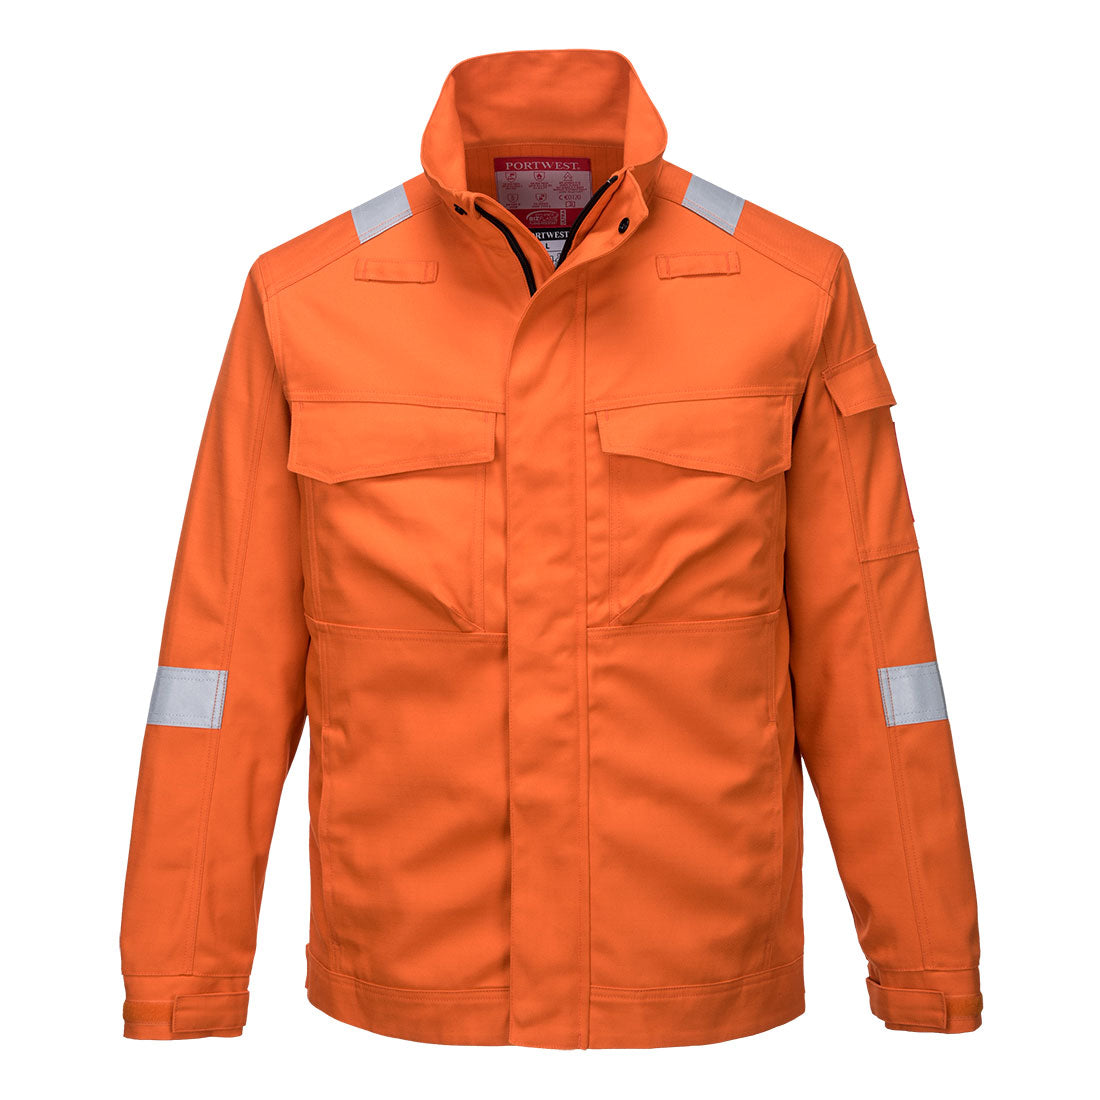 Bizflame Industry Jacket   (FR68)